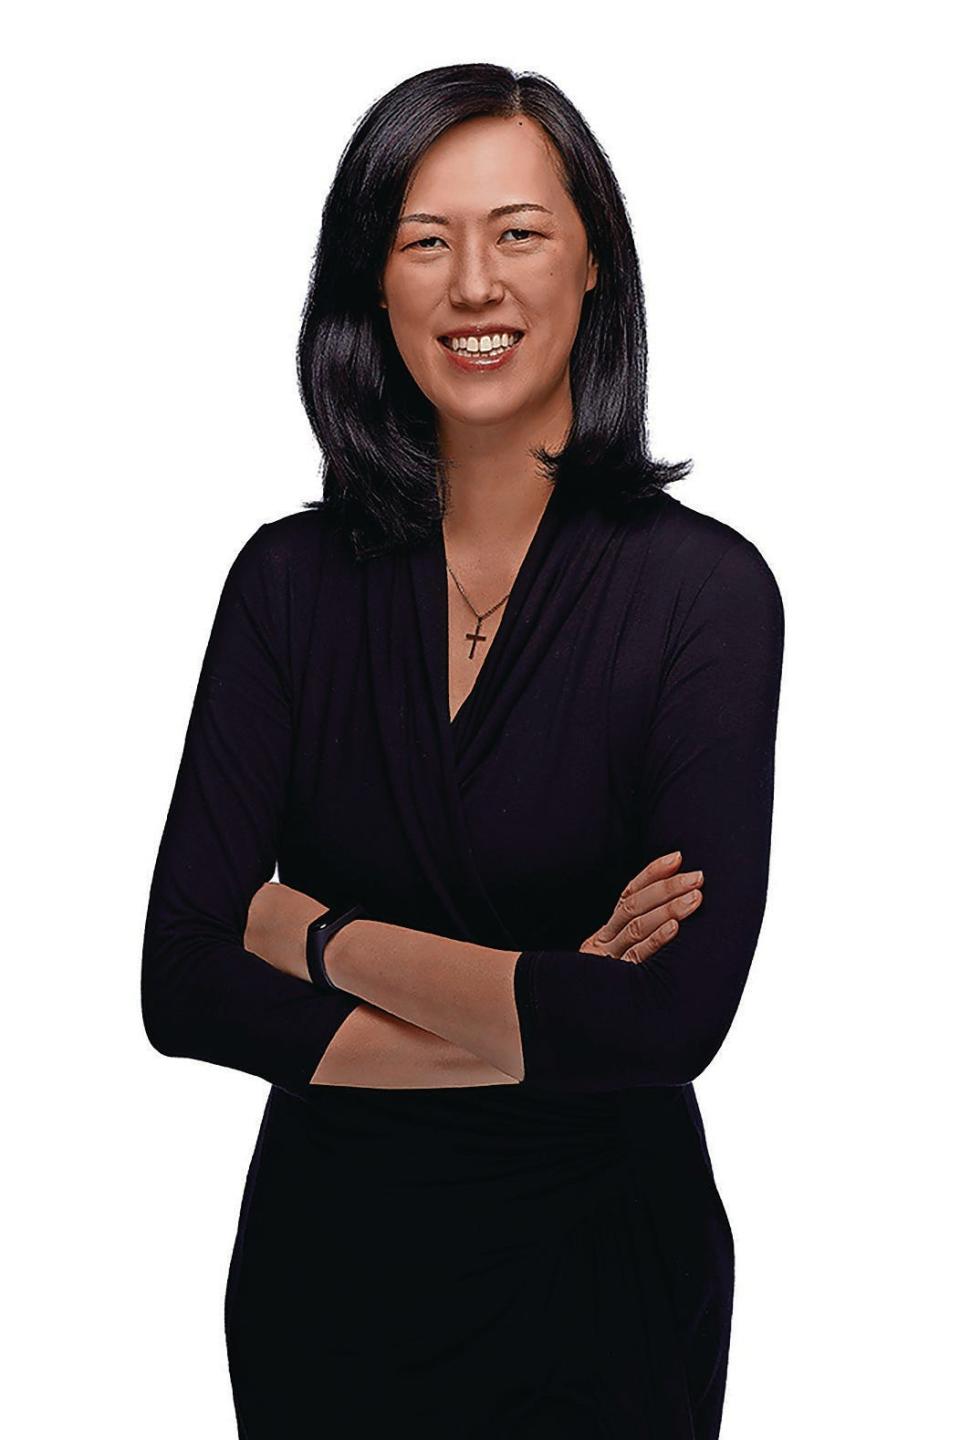 Deborah Liu is president and CEO of Ancestry.